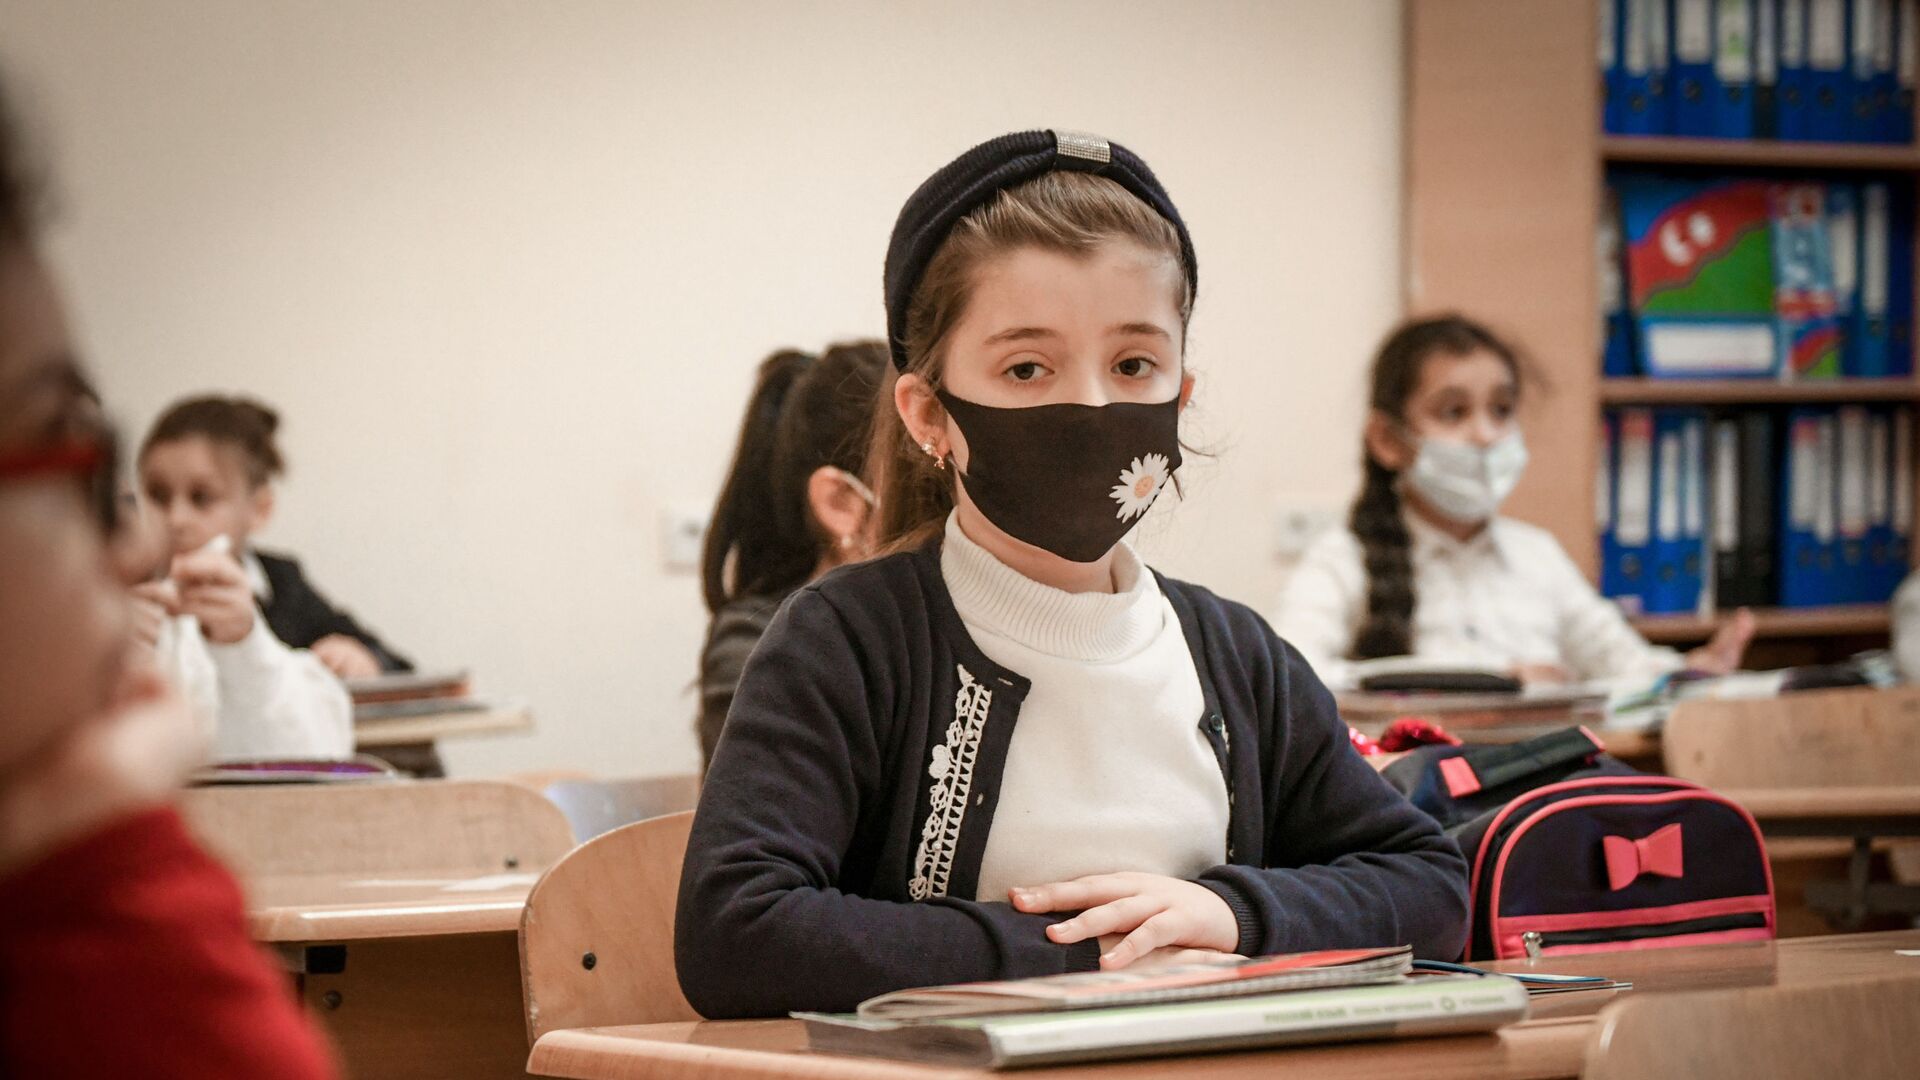 Возобновление очных занятий в бакинских школах, 1 февраля 2021 года - Sputnik Азербайджан, 1920, 03.09.2021